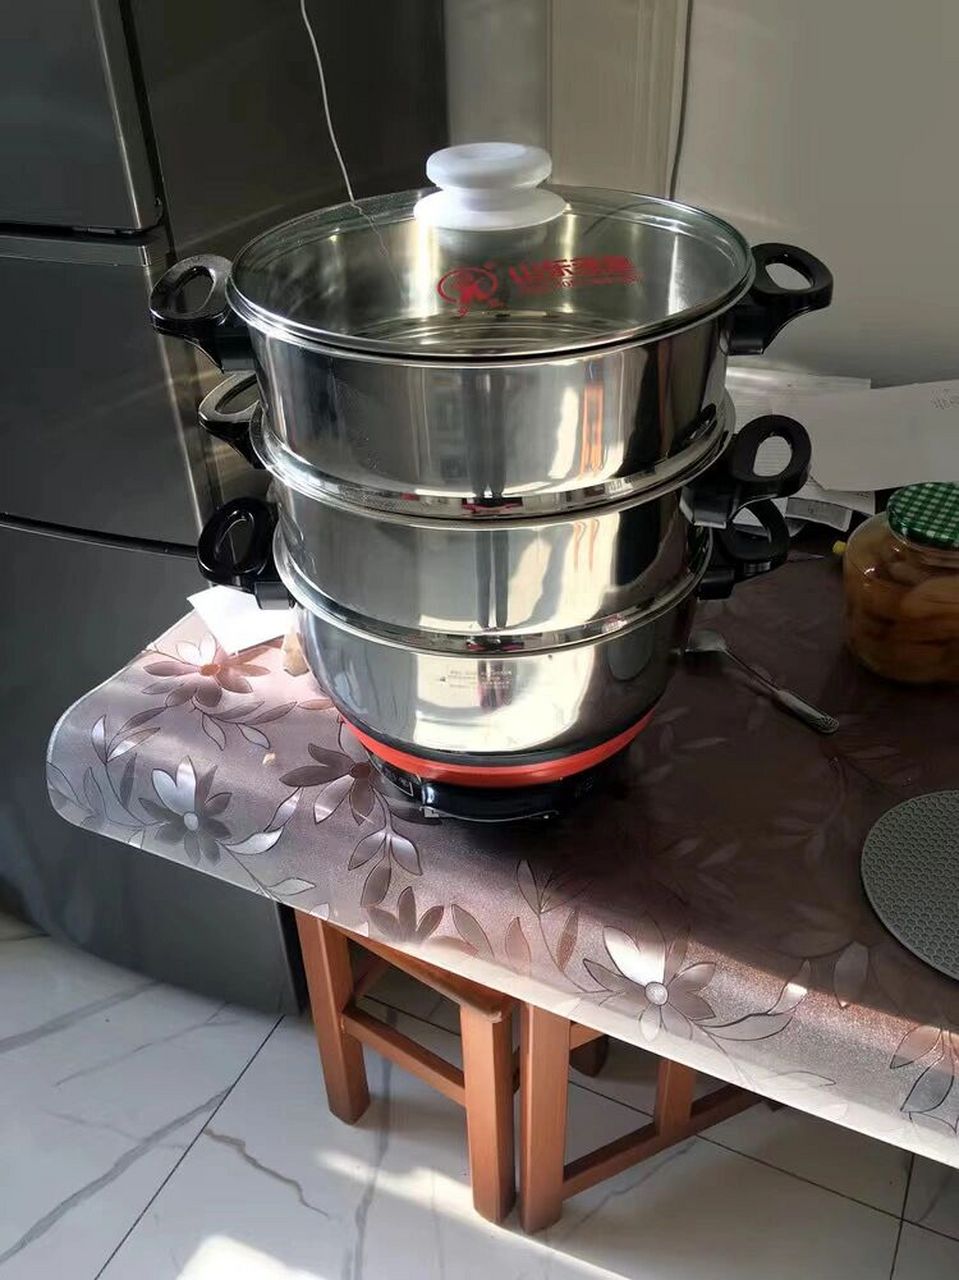 多星电热锅,淄博人估计都在用, 我妈家的不知道多少年了